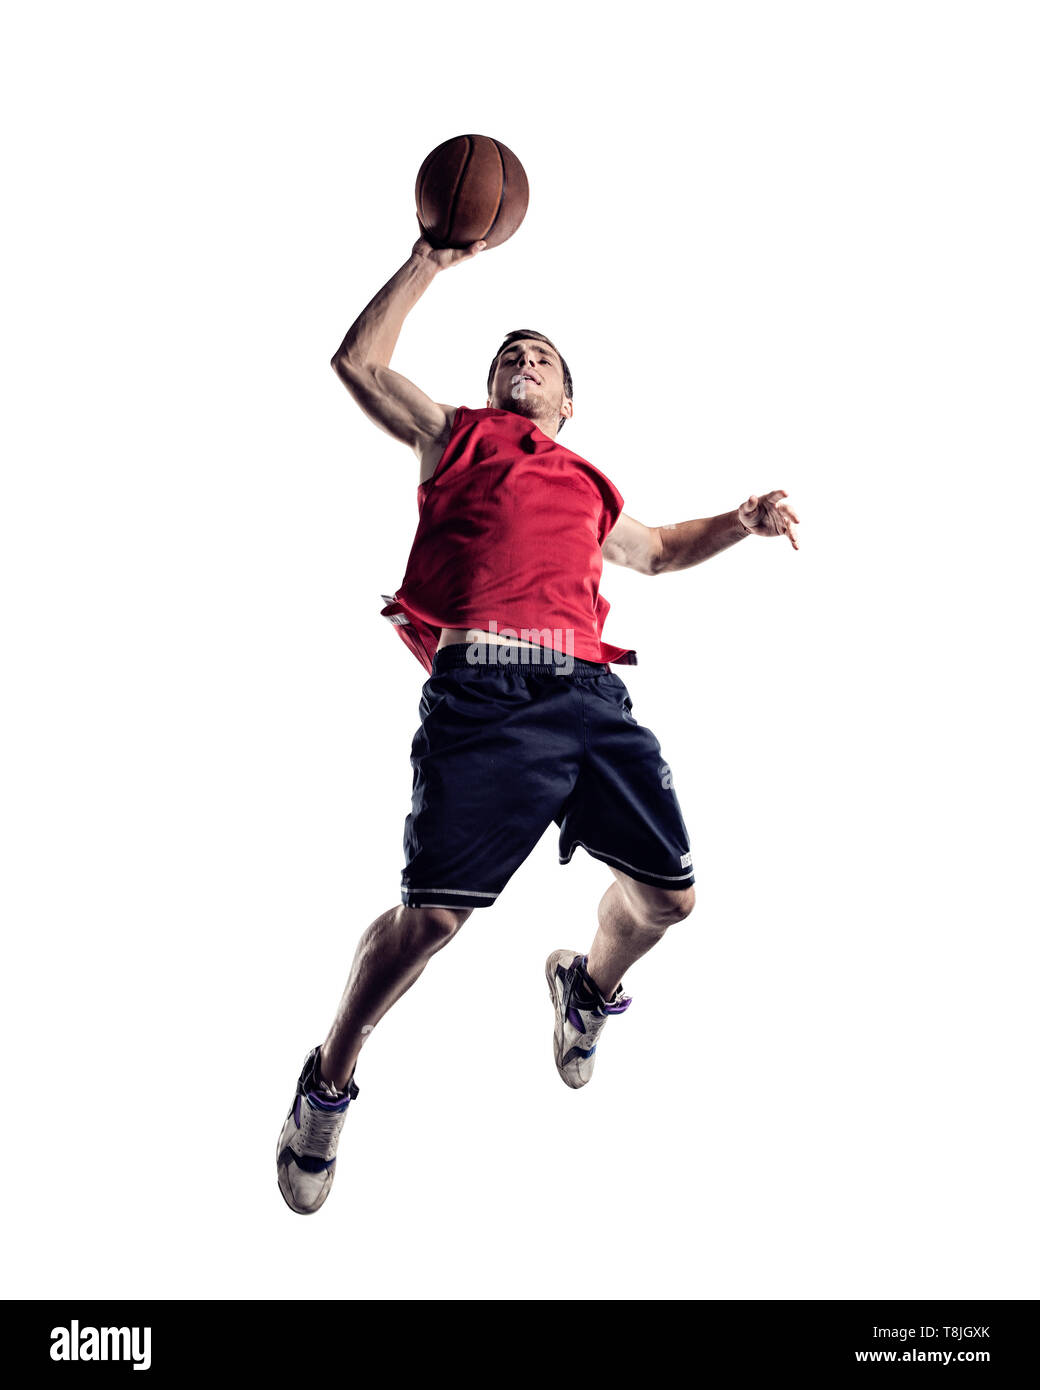 El jugador de baloncesto en acción aislada sobre fondo blanco. Foto de stock